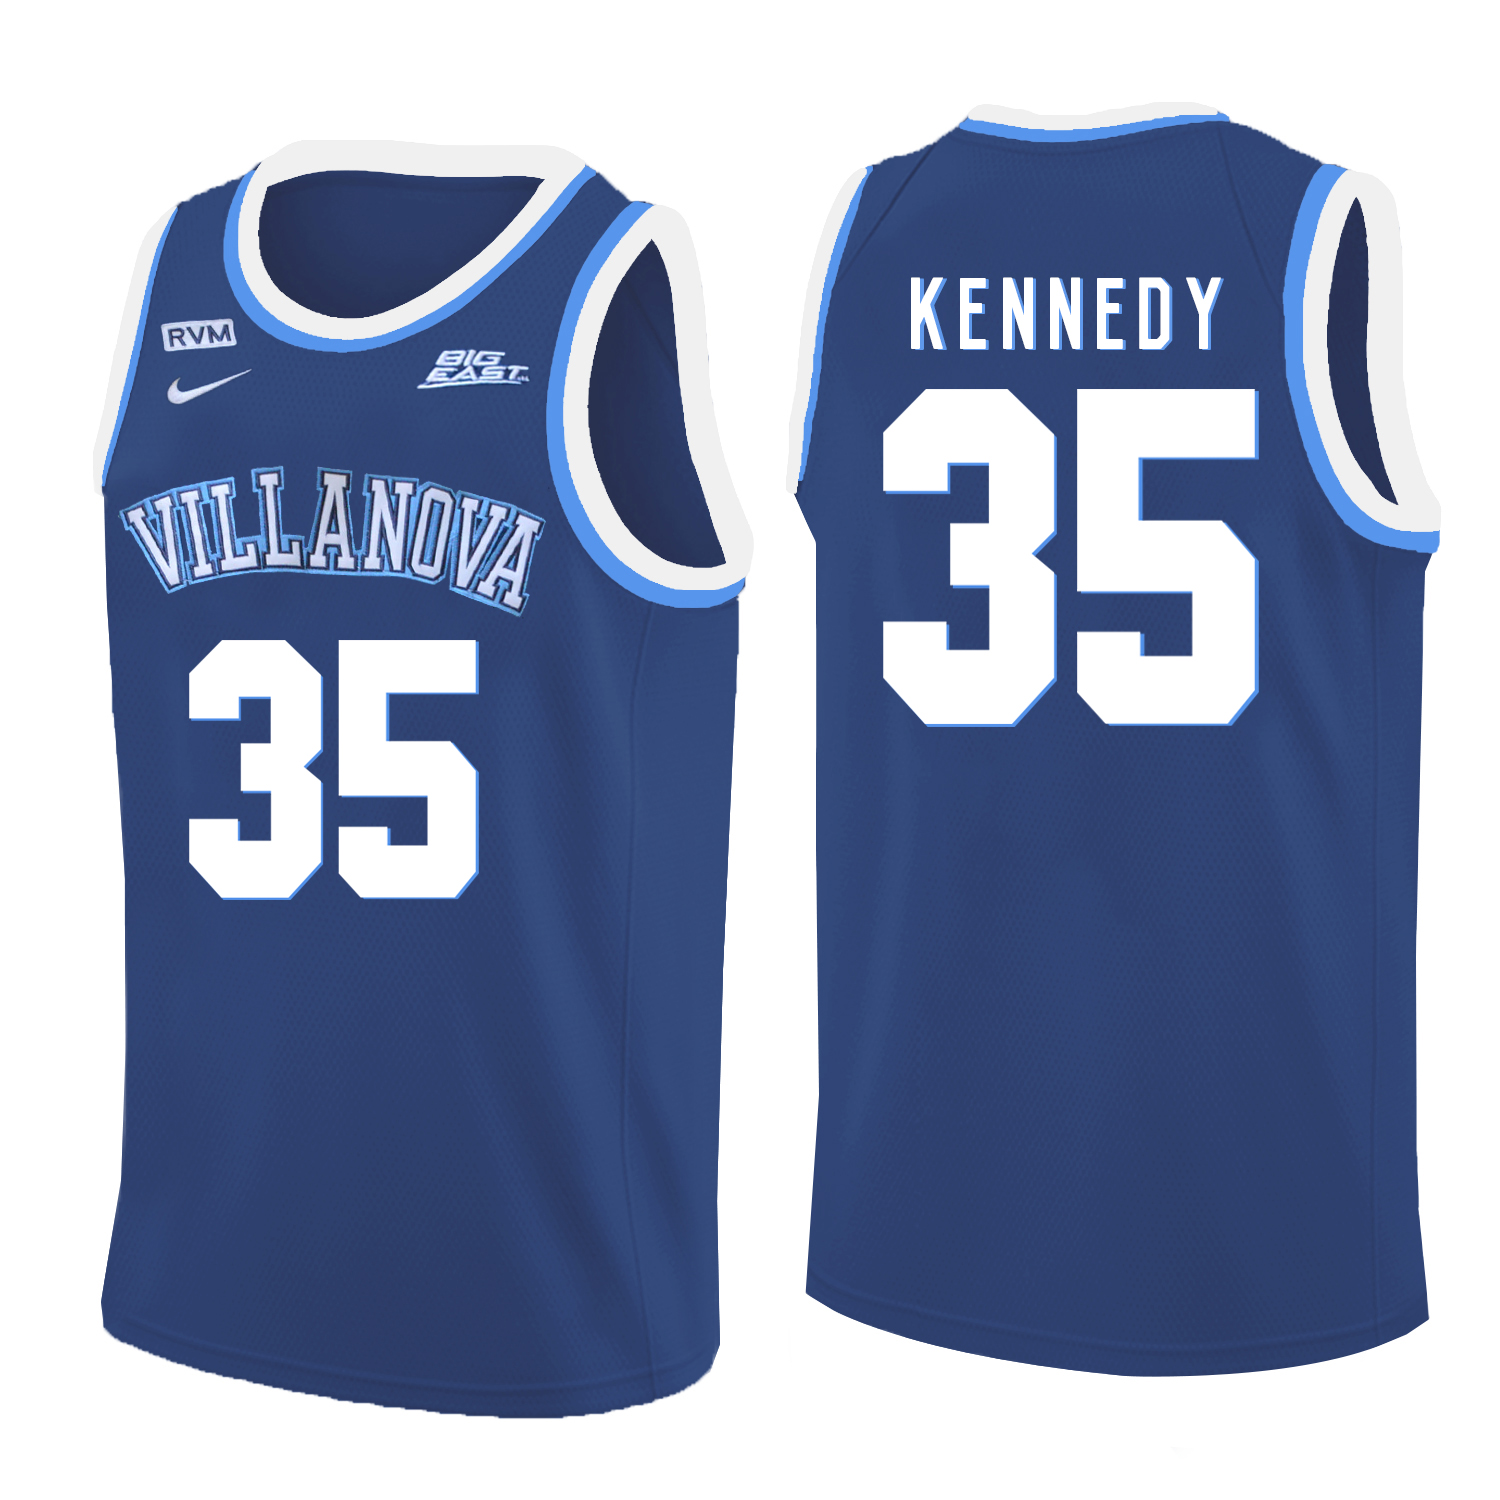 Villanova Wildcats 35 Matt Kennedy Blue College Basketball Jersey